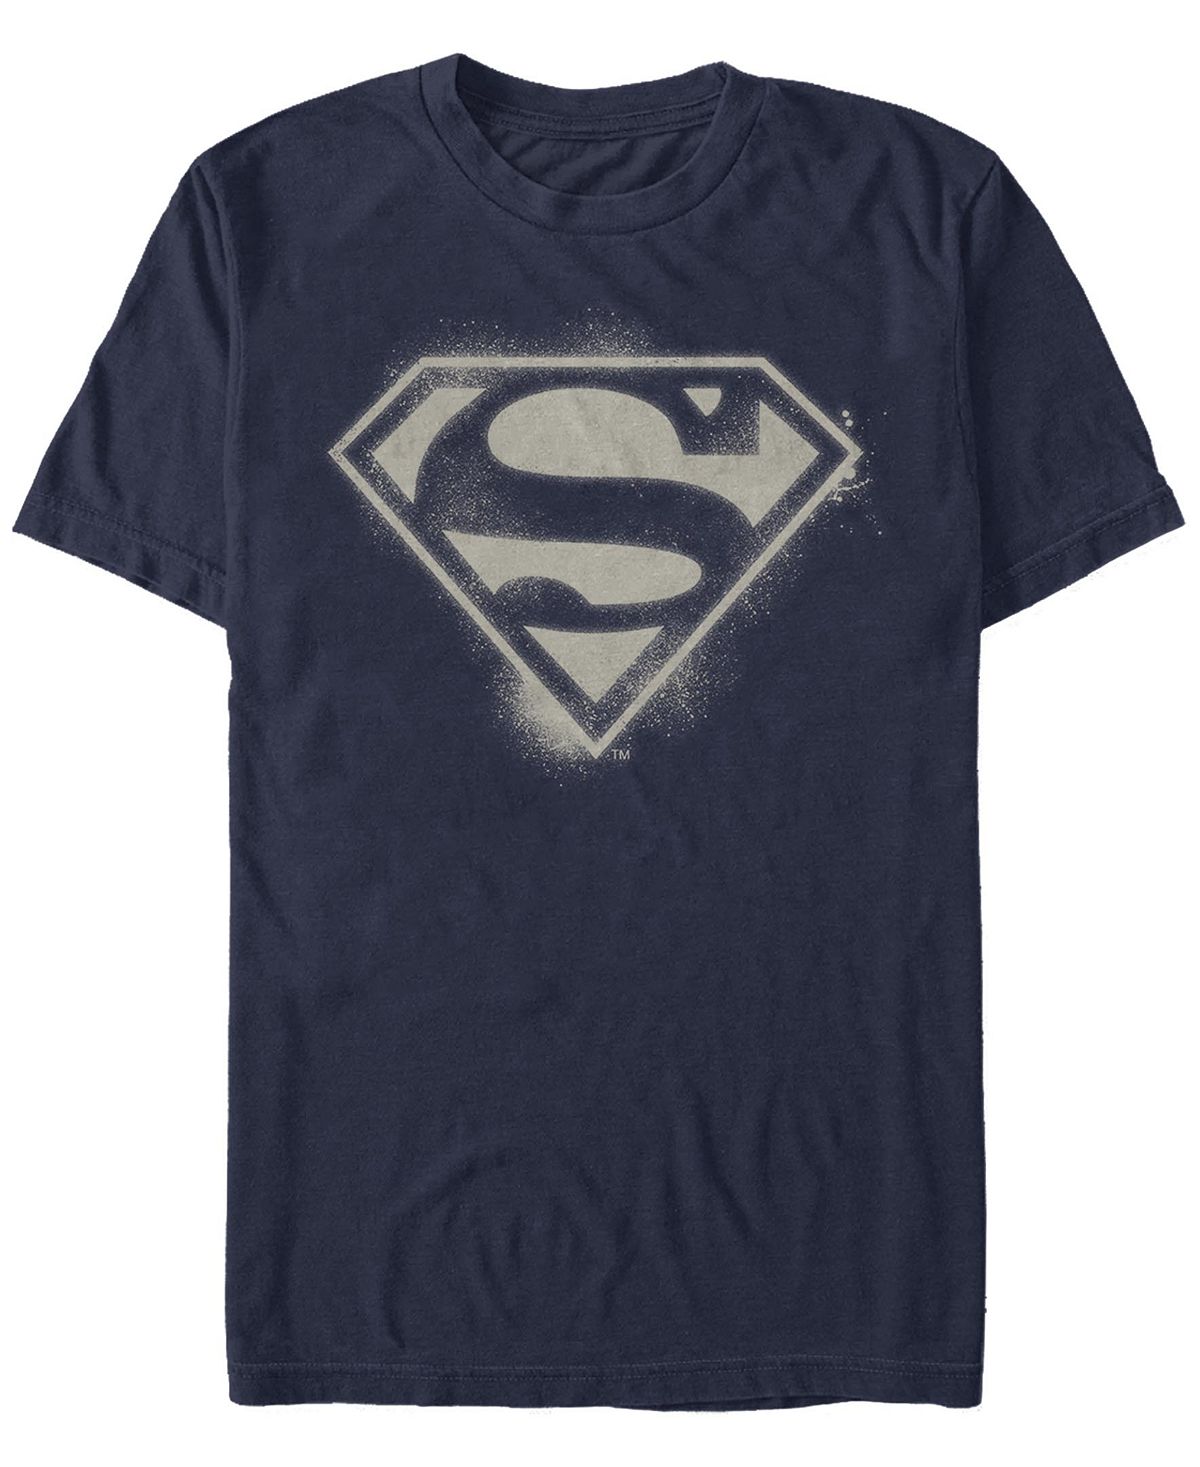 Мужская футболка с коротким рукавом и логотипом superman spray logo Fifth Sun, синий носки dc comics радужный superman белые